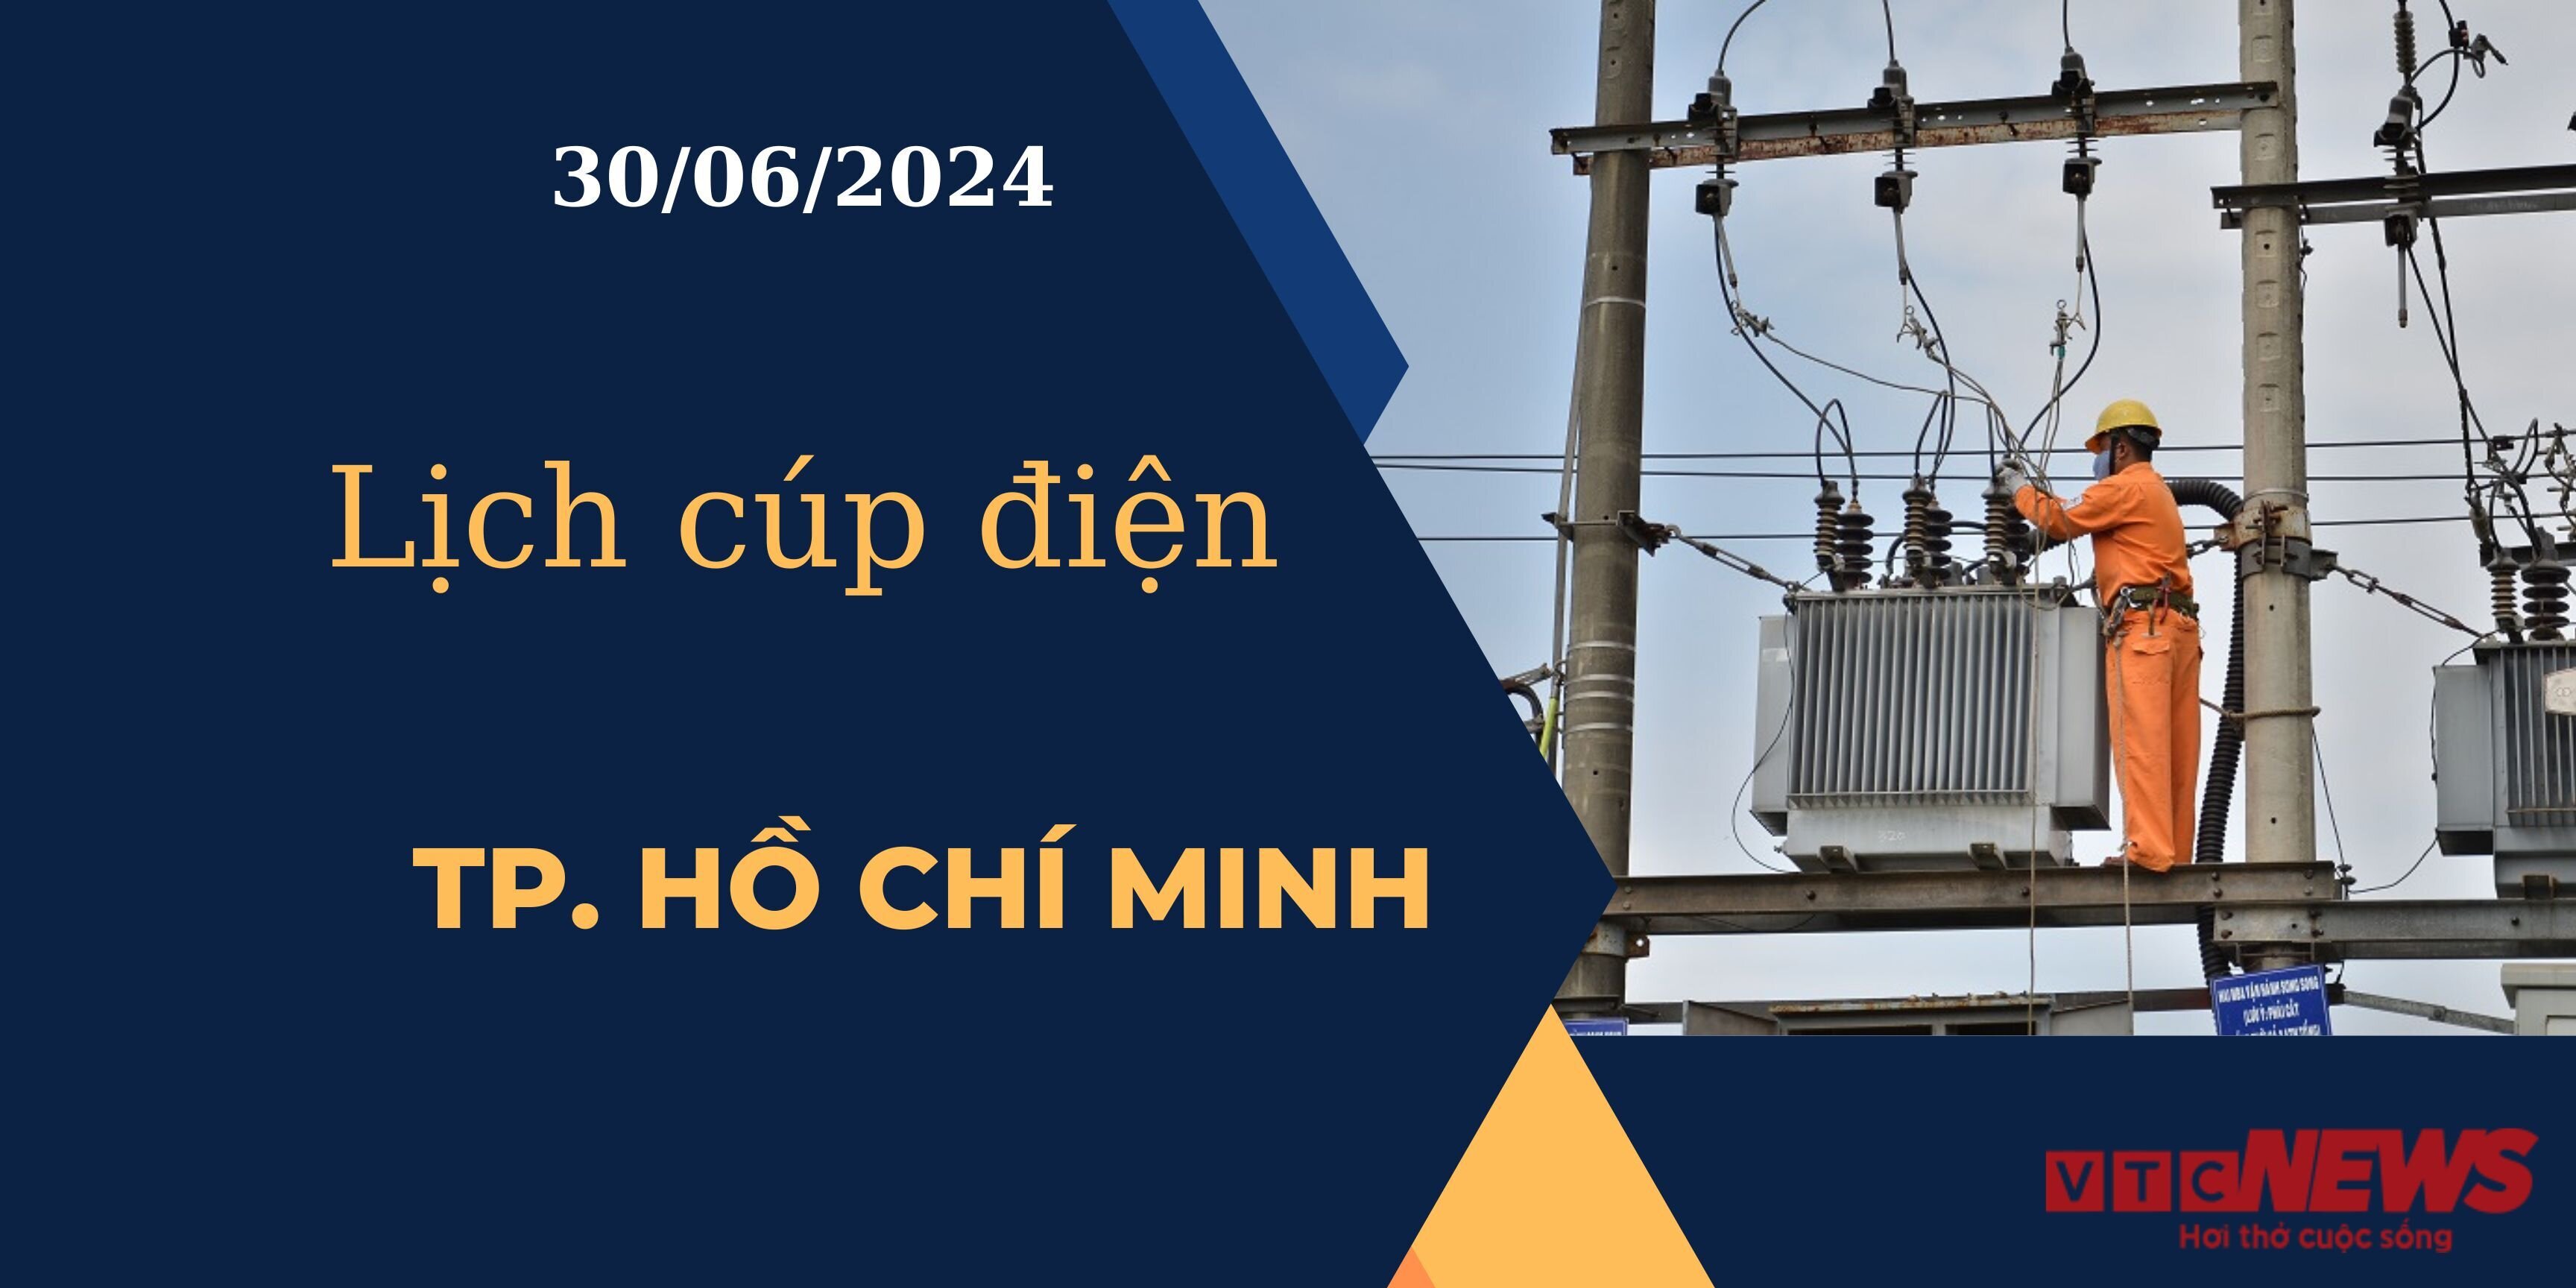 Lịch cúp điện hôm nay ngày 30/06/2024 tại TP.HCM